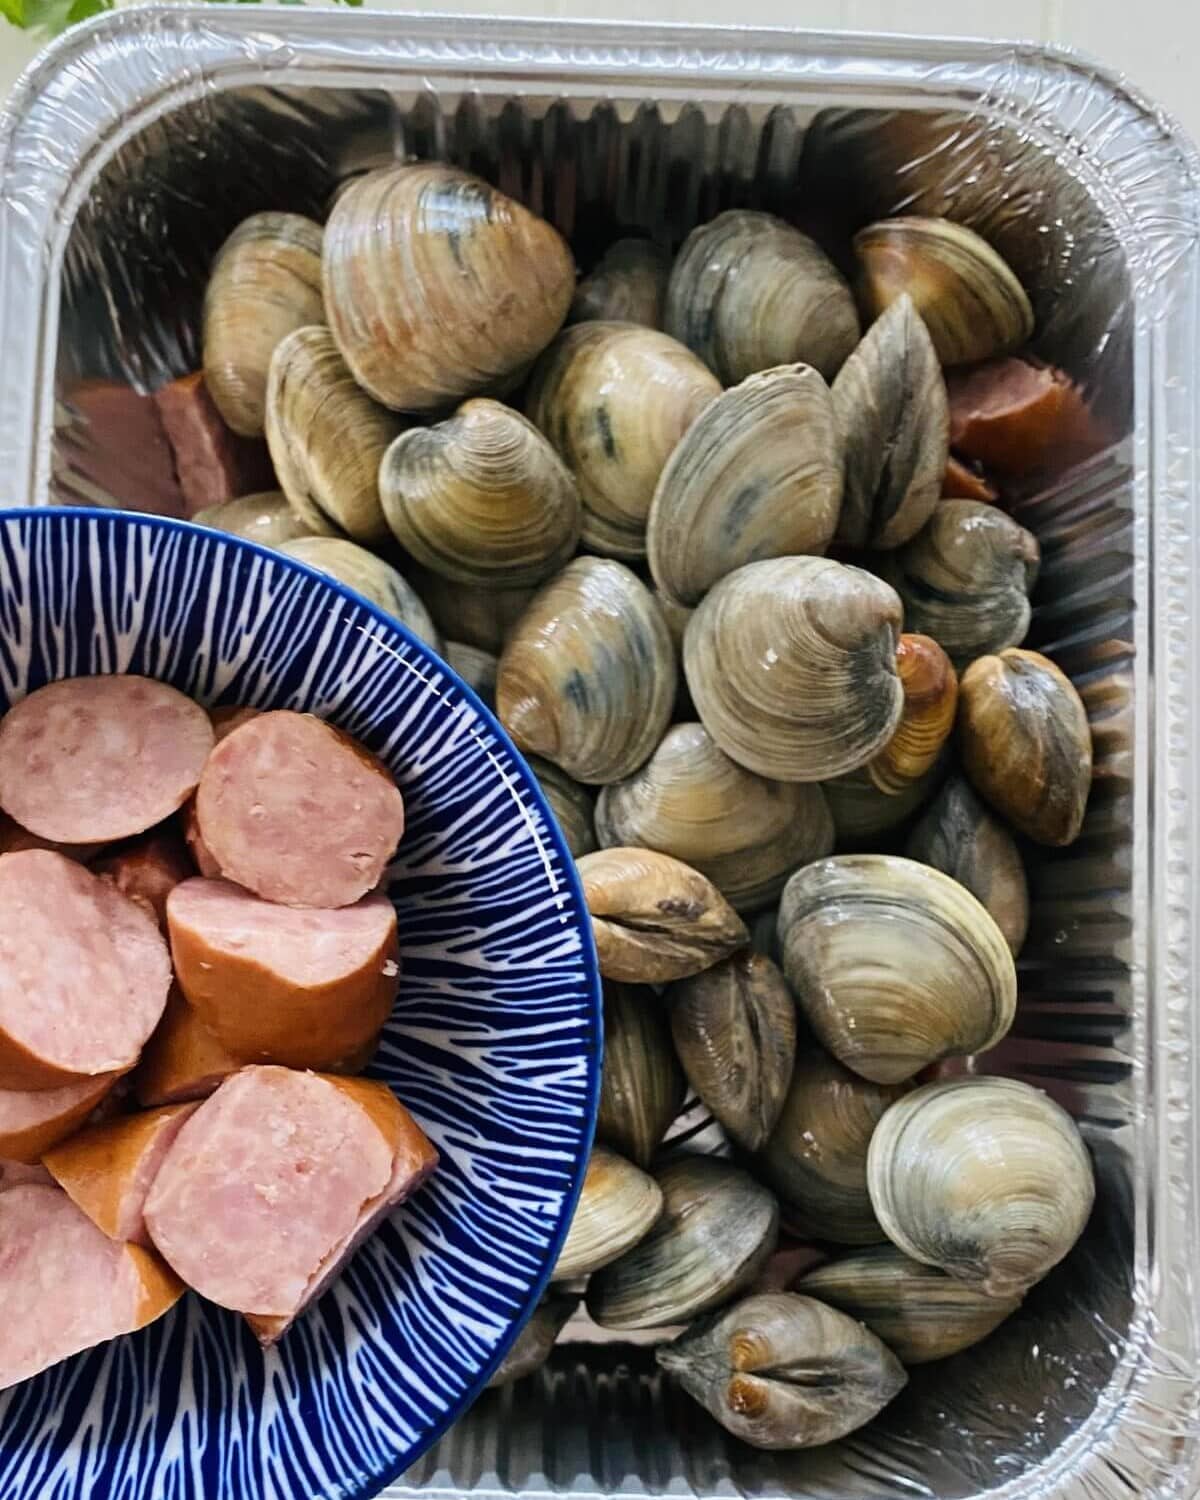 littleneck clams and kielbasa.